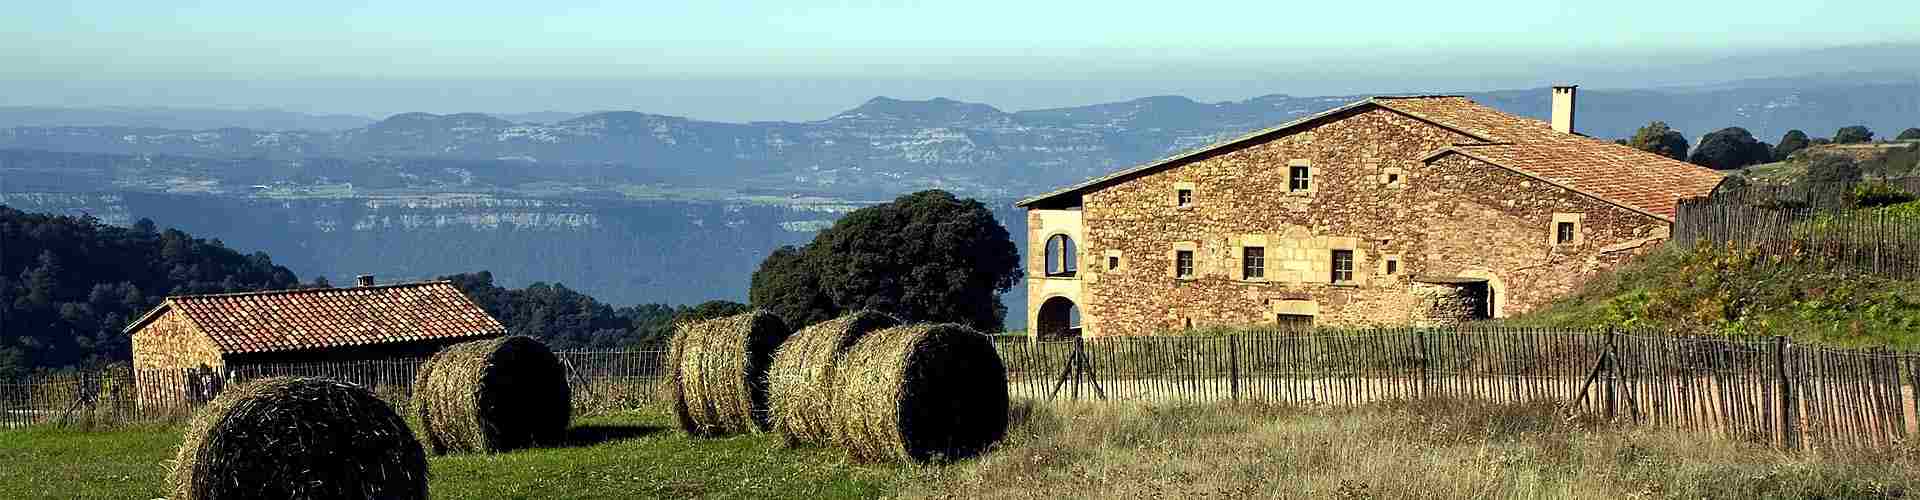 Casas rurales con rutas guiadas en el País Vasco
          
          

